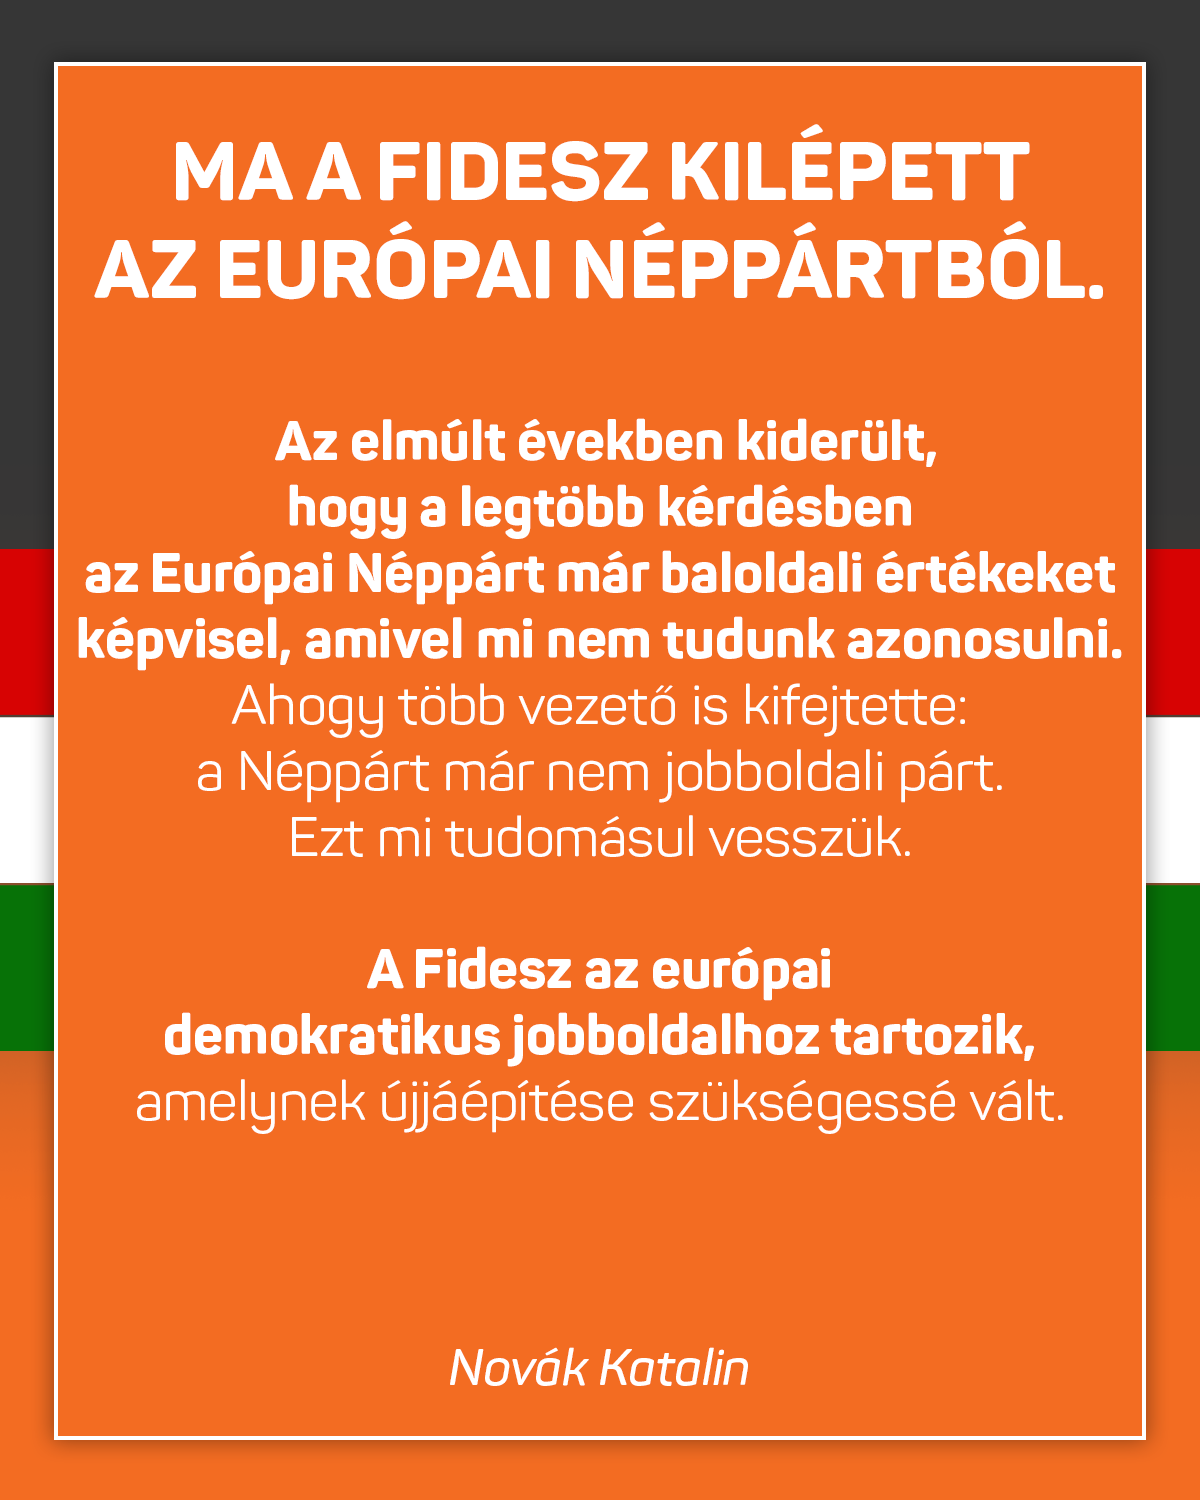 Novák Katalin – Ma a Fidesz kilépett az Európai Néppártból. Az elmúlt években kiderült, hogy a legtöbb kérdésben az Európai Néppárt már baloldali értékeket képvisel, amivel mi nem tudunk azonosulni.